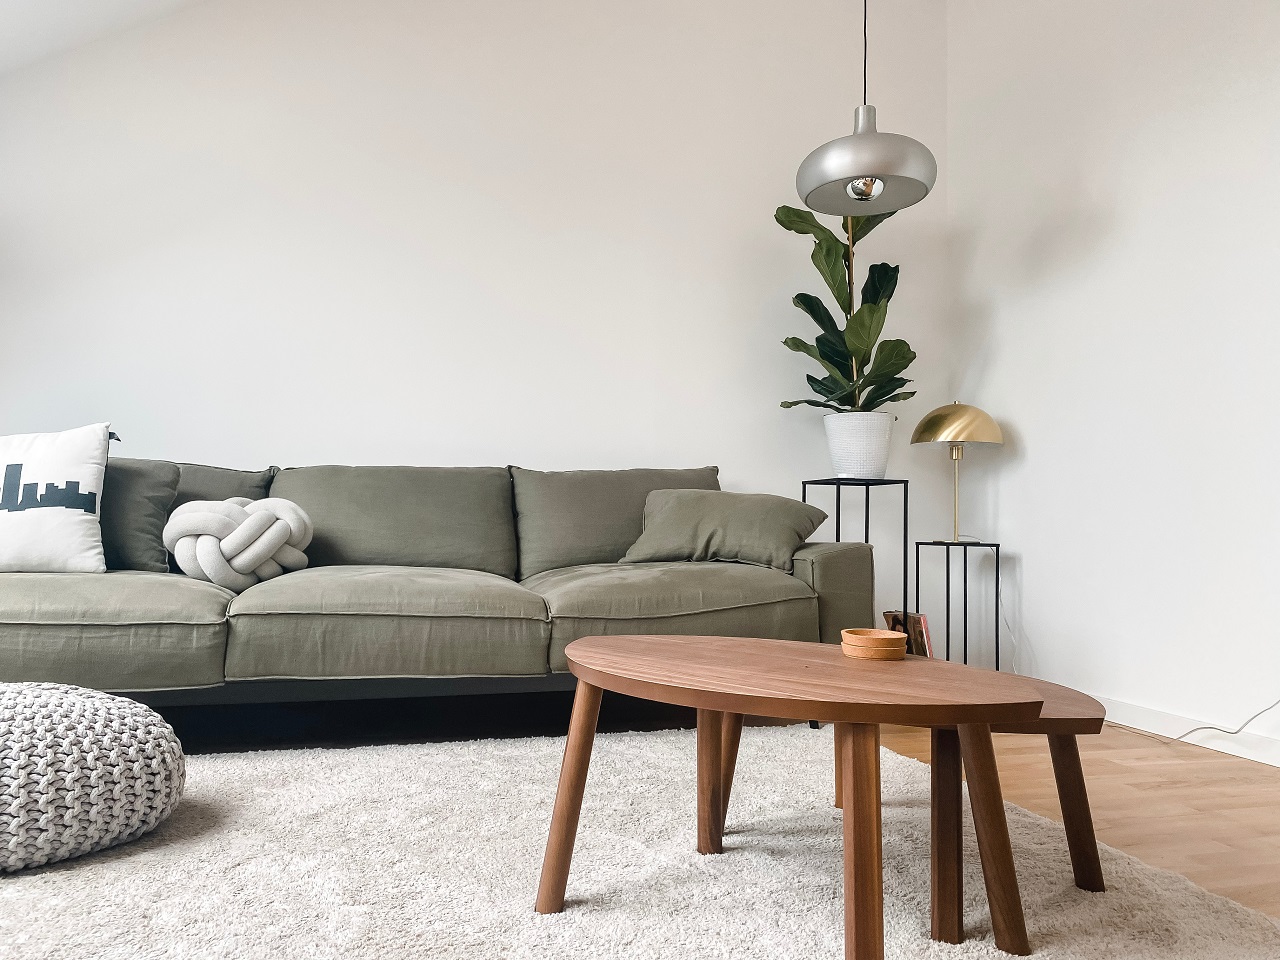 Dlaczego warto się zdecydować na kupno dywanu w mieszkaniu?